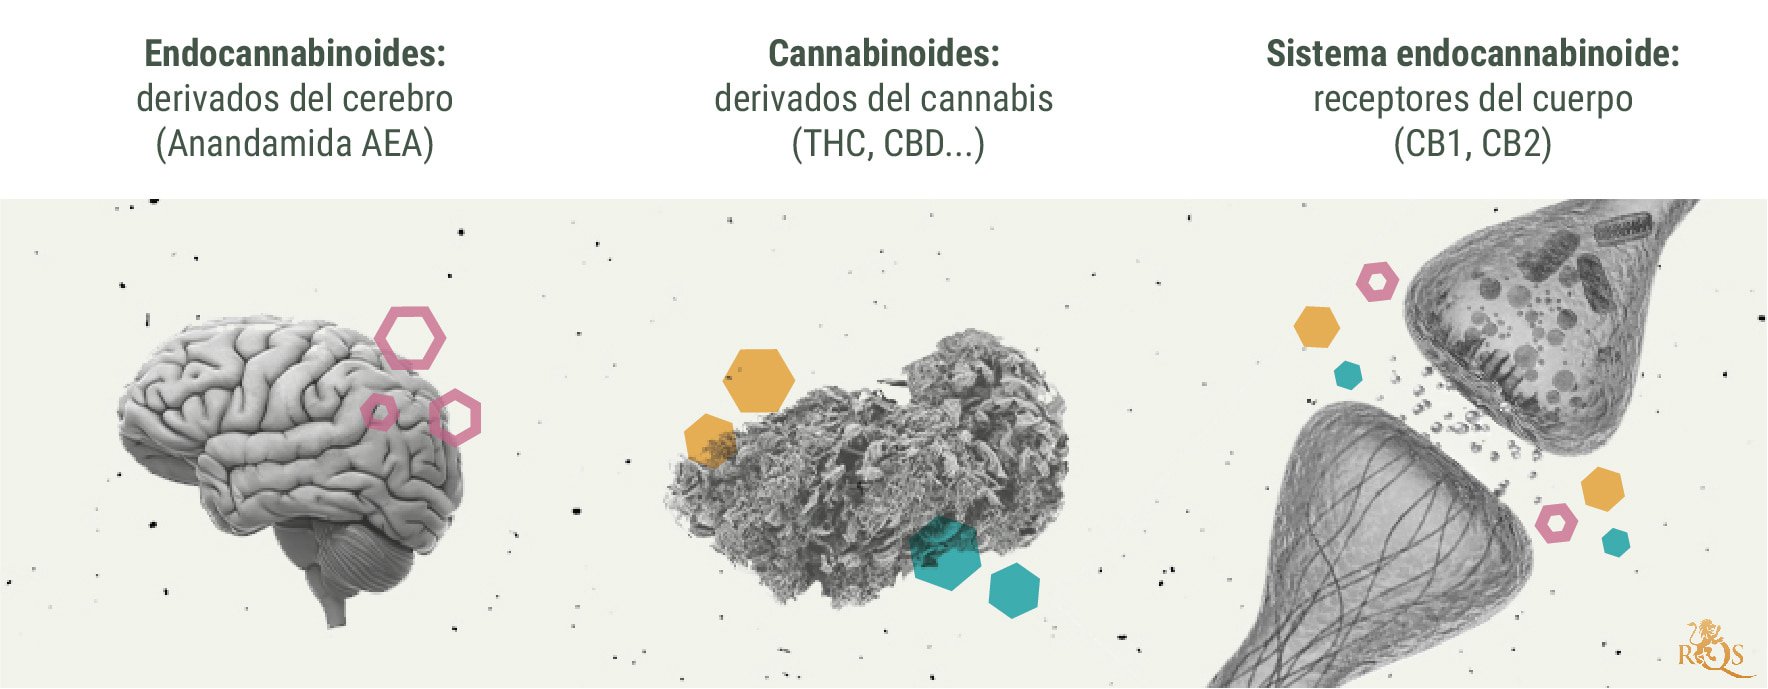 Química del subidón de cannabis